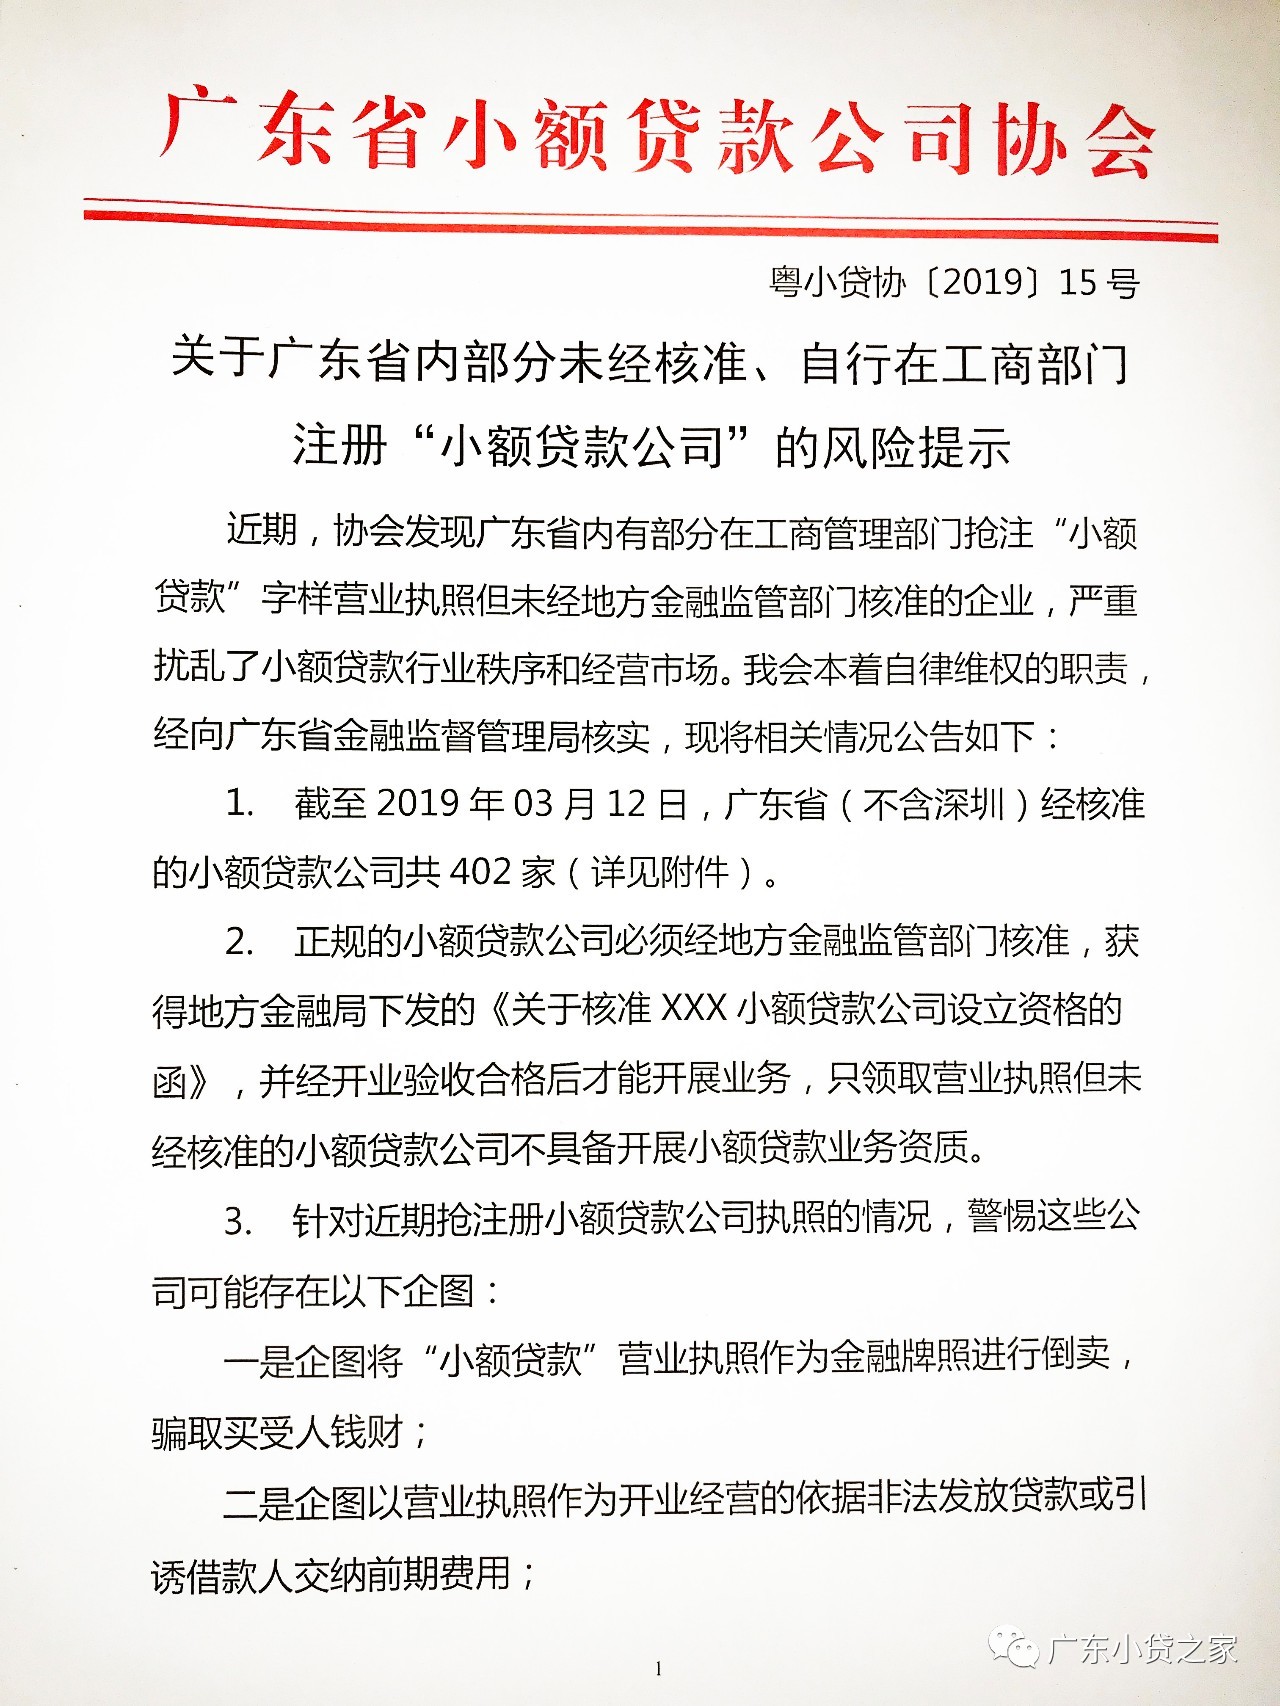 【协会通知】关于广东省内部分未经核准、自行在工商部门注册“小额贷款公司”的风险提示